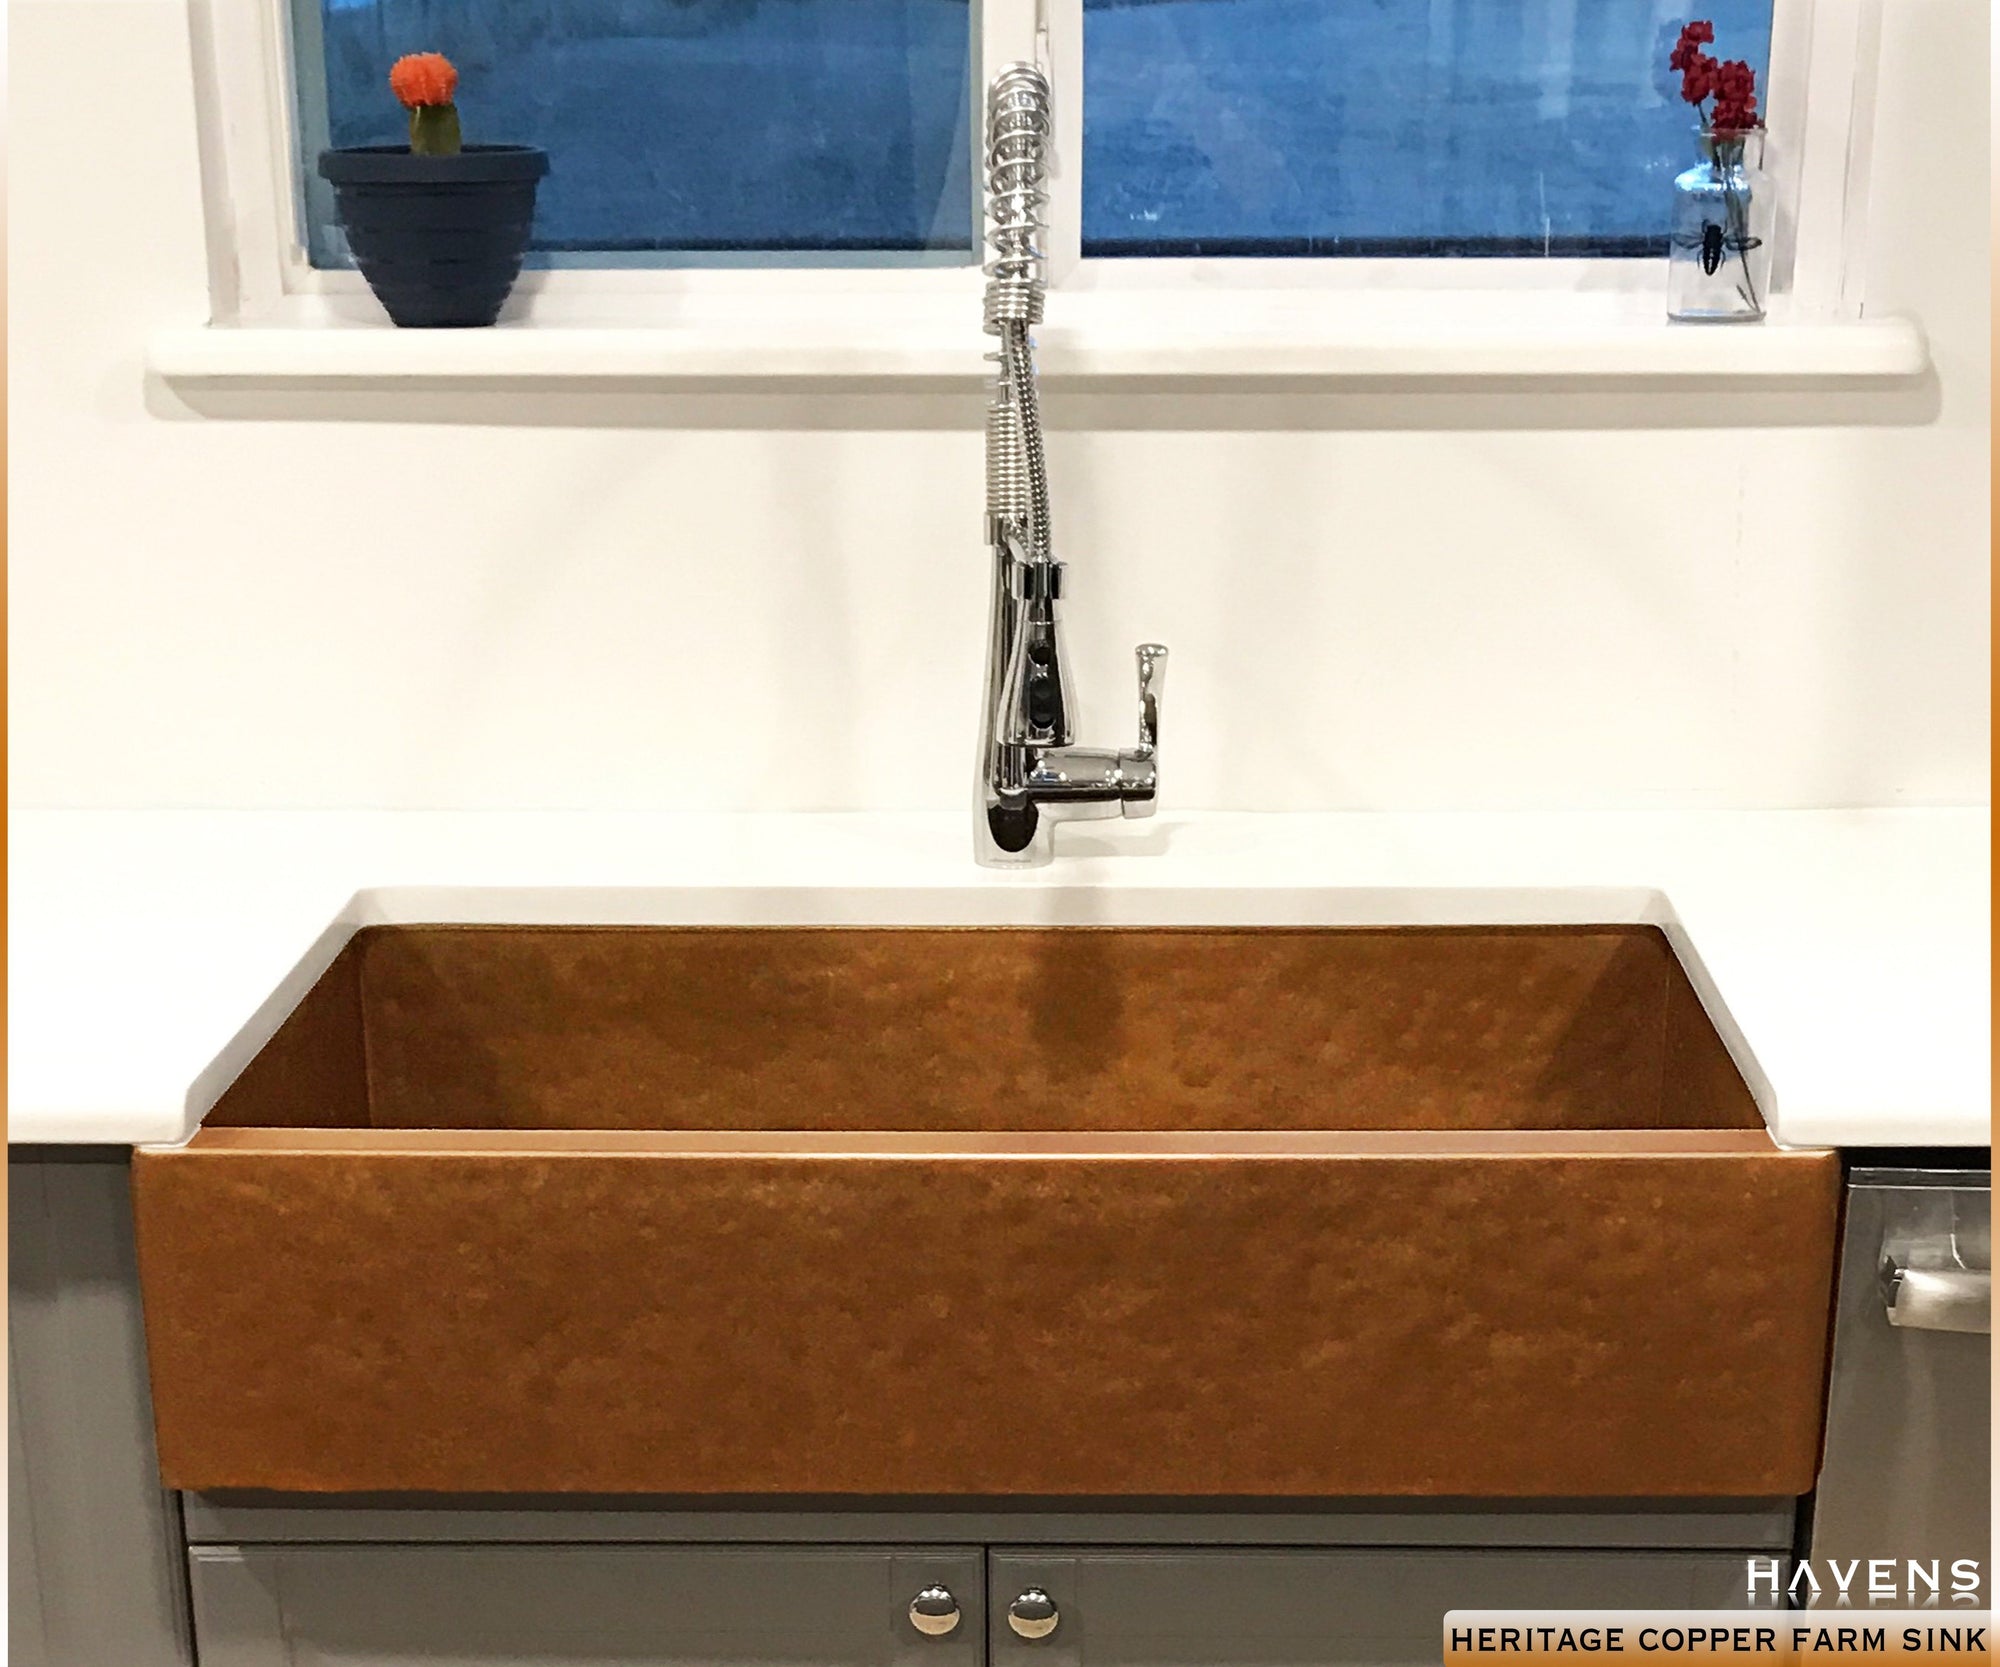 SoLuna Copper Kitchen Sink | Side Drainboard